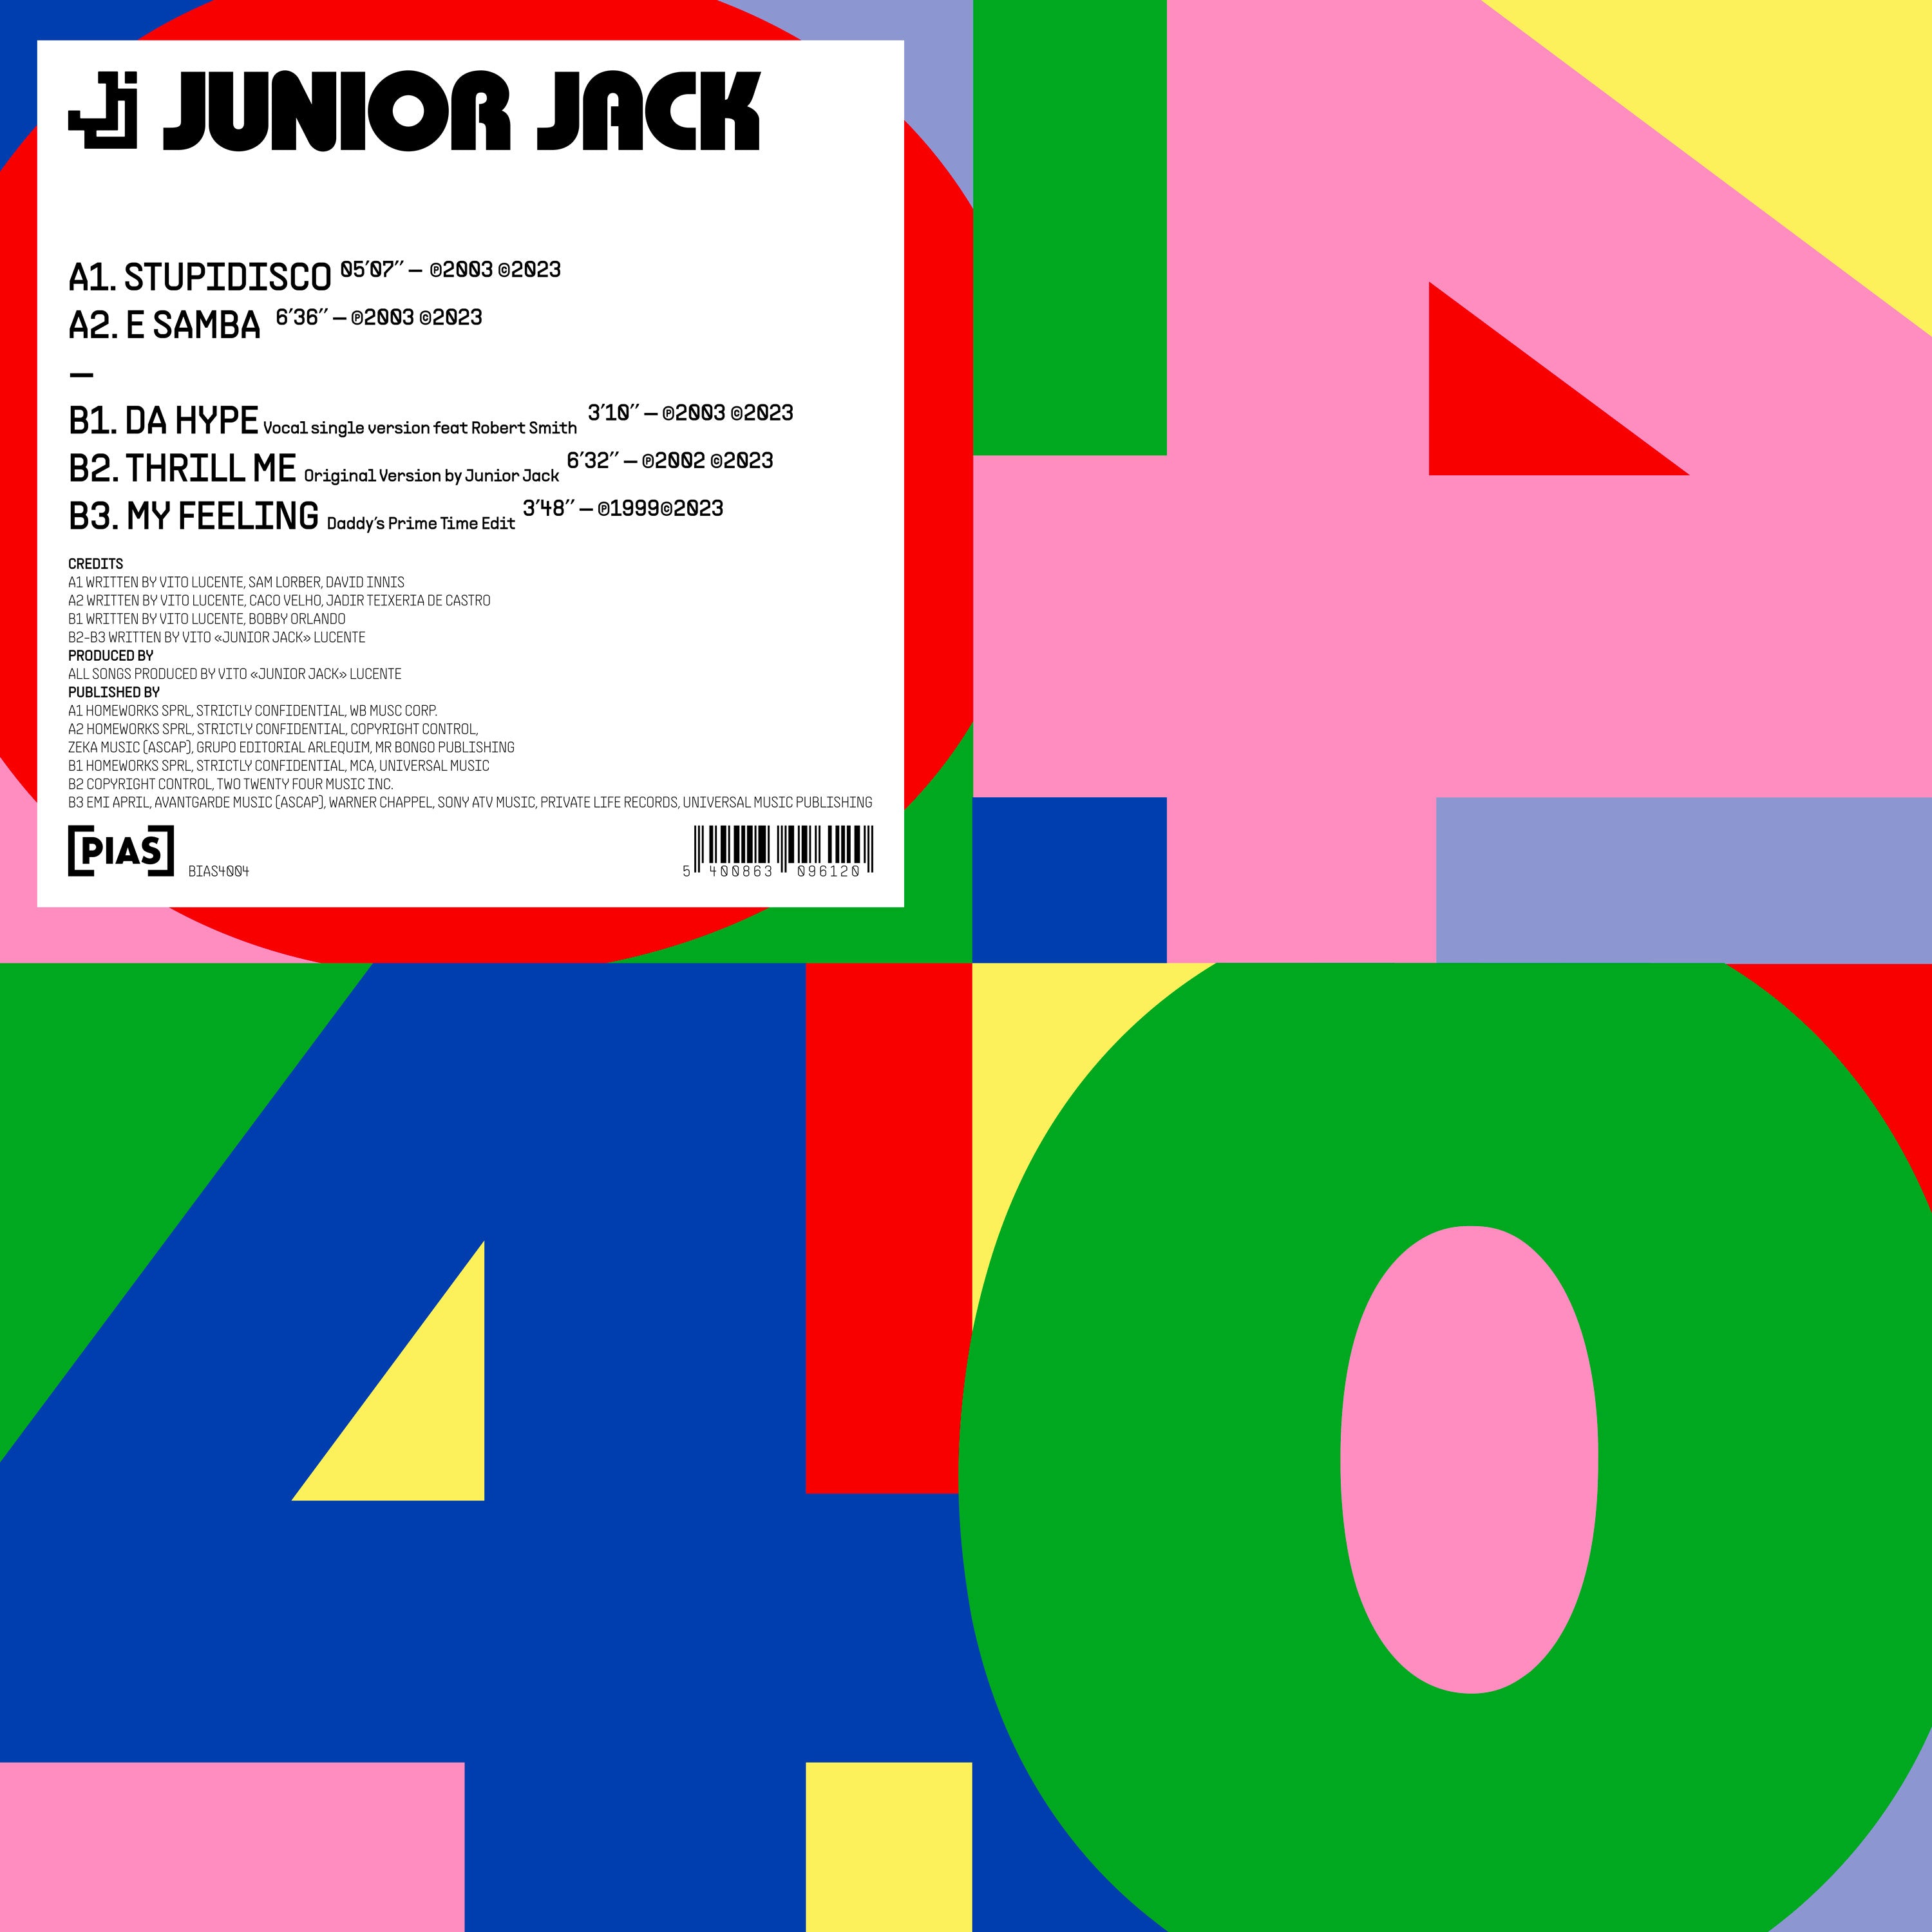 Junior Jack - [PIAS] 40: Vinyl 12" EP